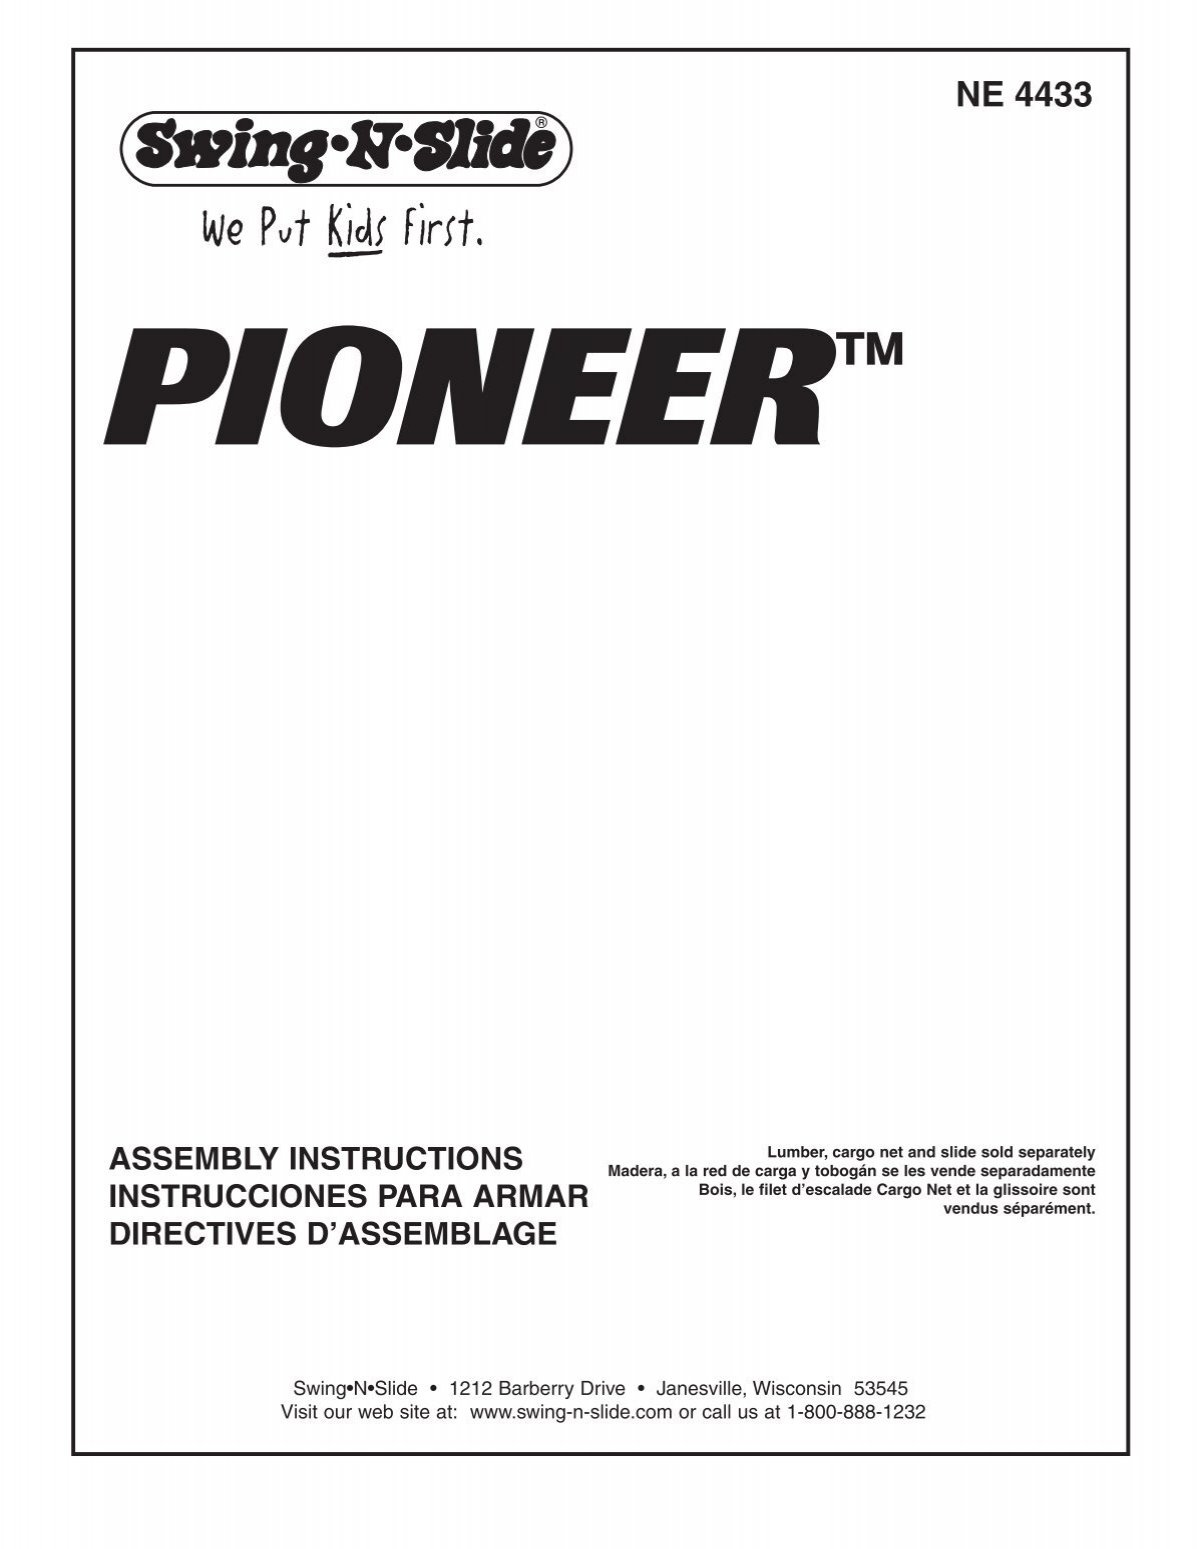 Pioneer Plan - Swing-N-Slide